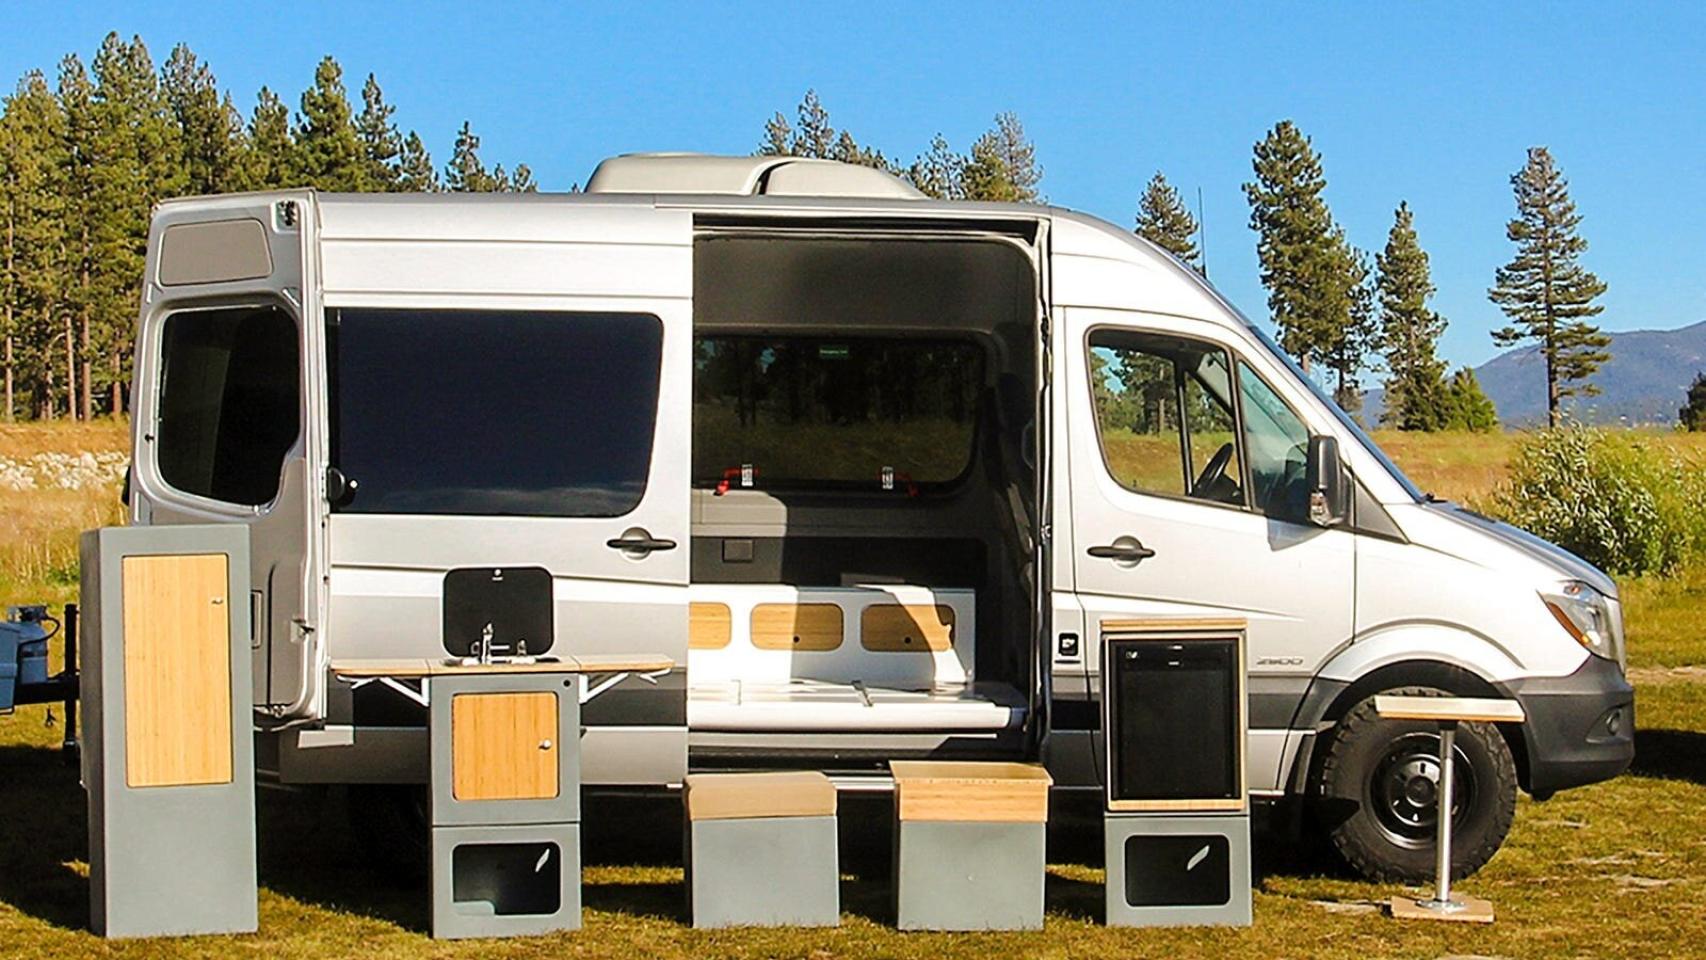 Fregaderos camper y complementos - Camperizar furgonetas y caravanas